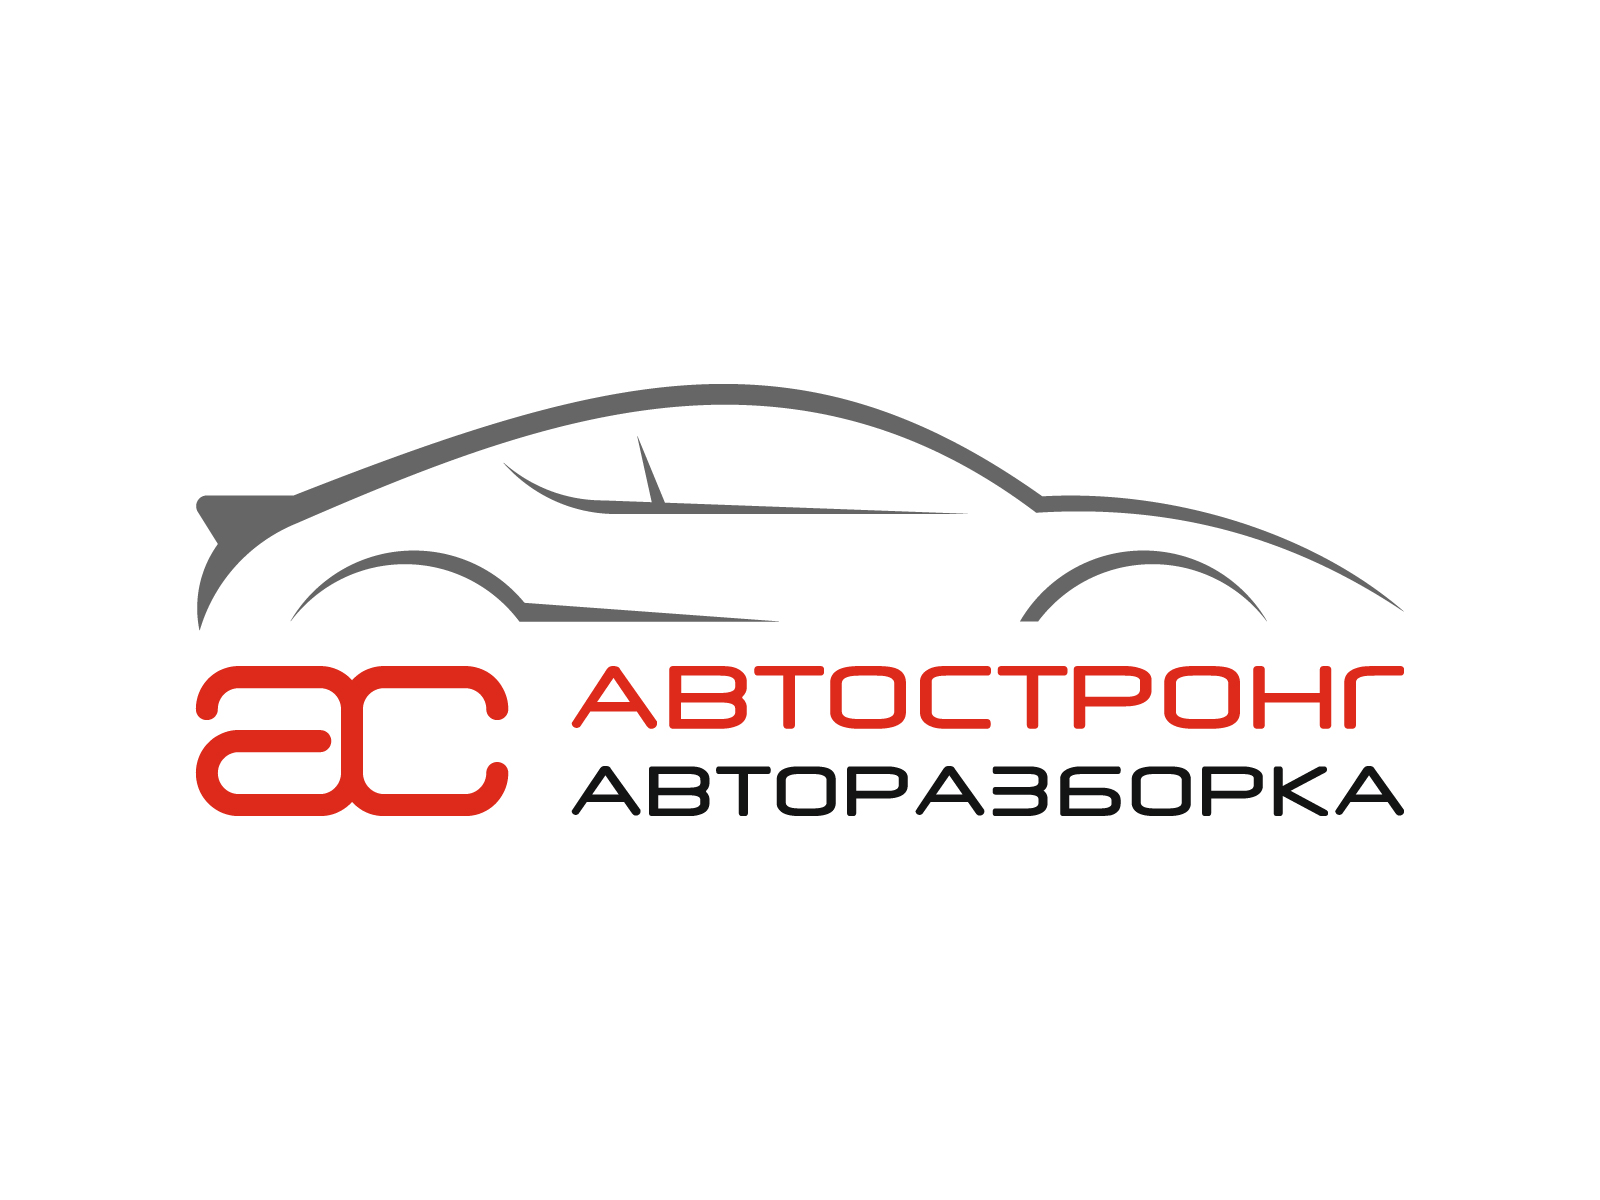 Похожие объявления о продаже автозапчасти или аксессуара для автомобиля в Саратове: